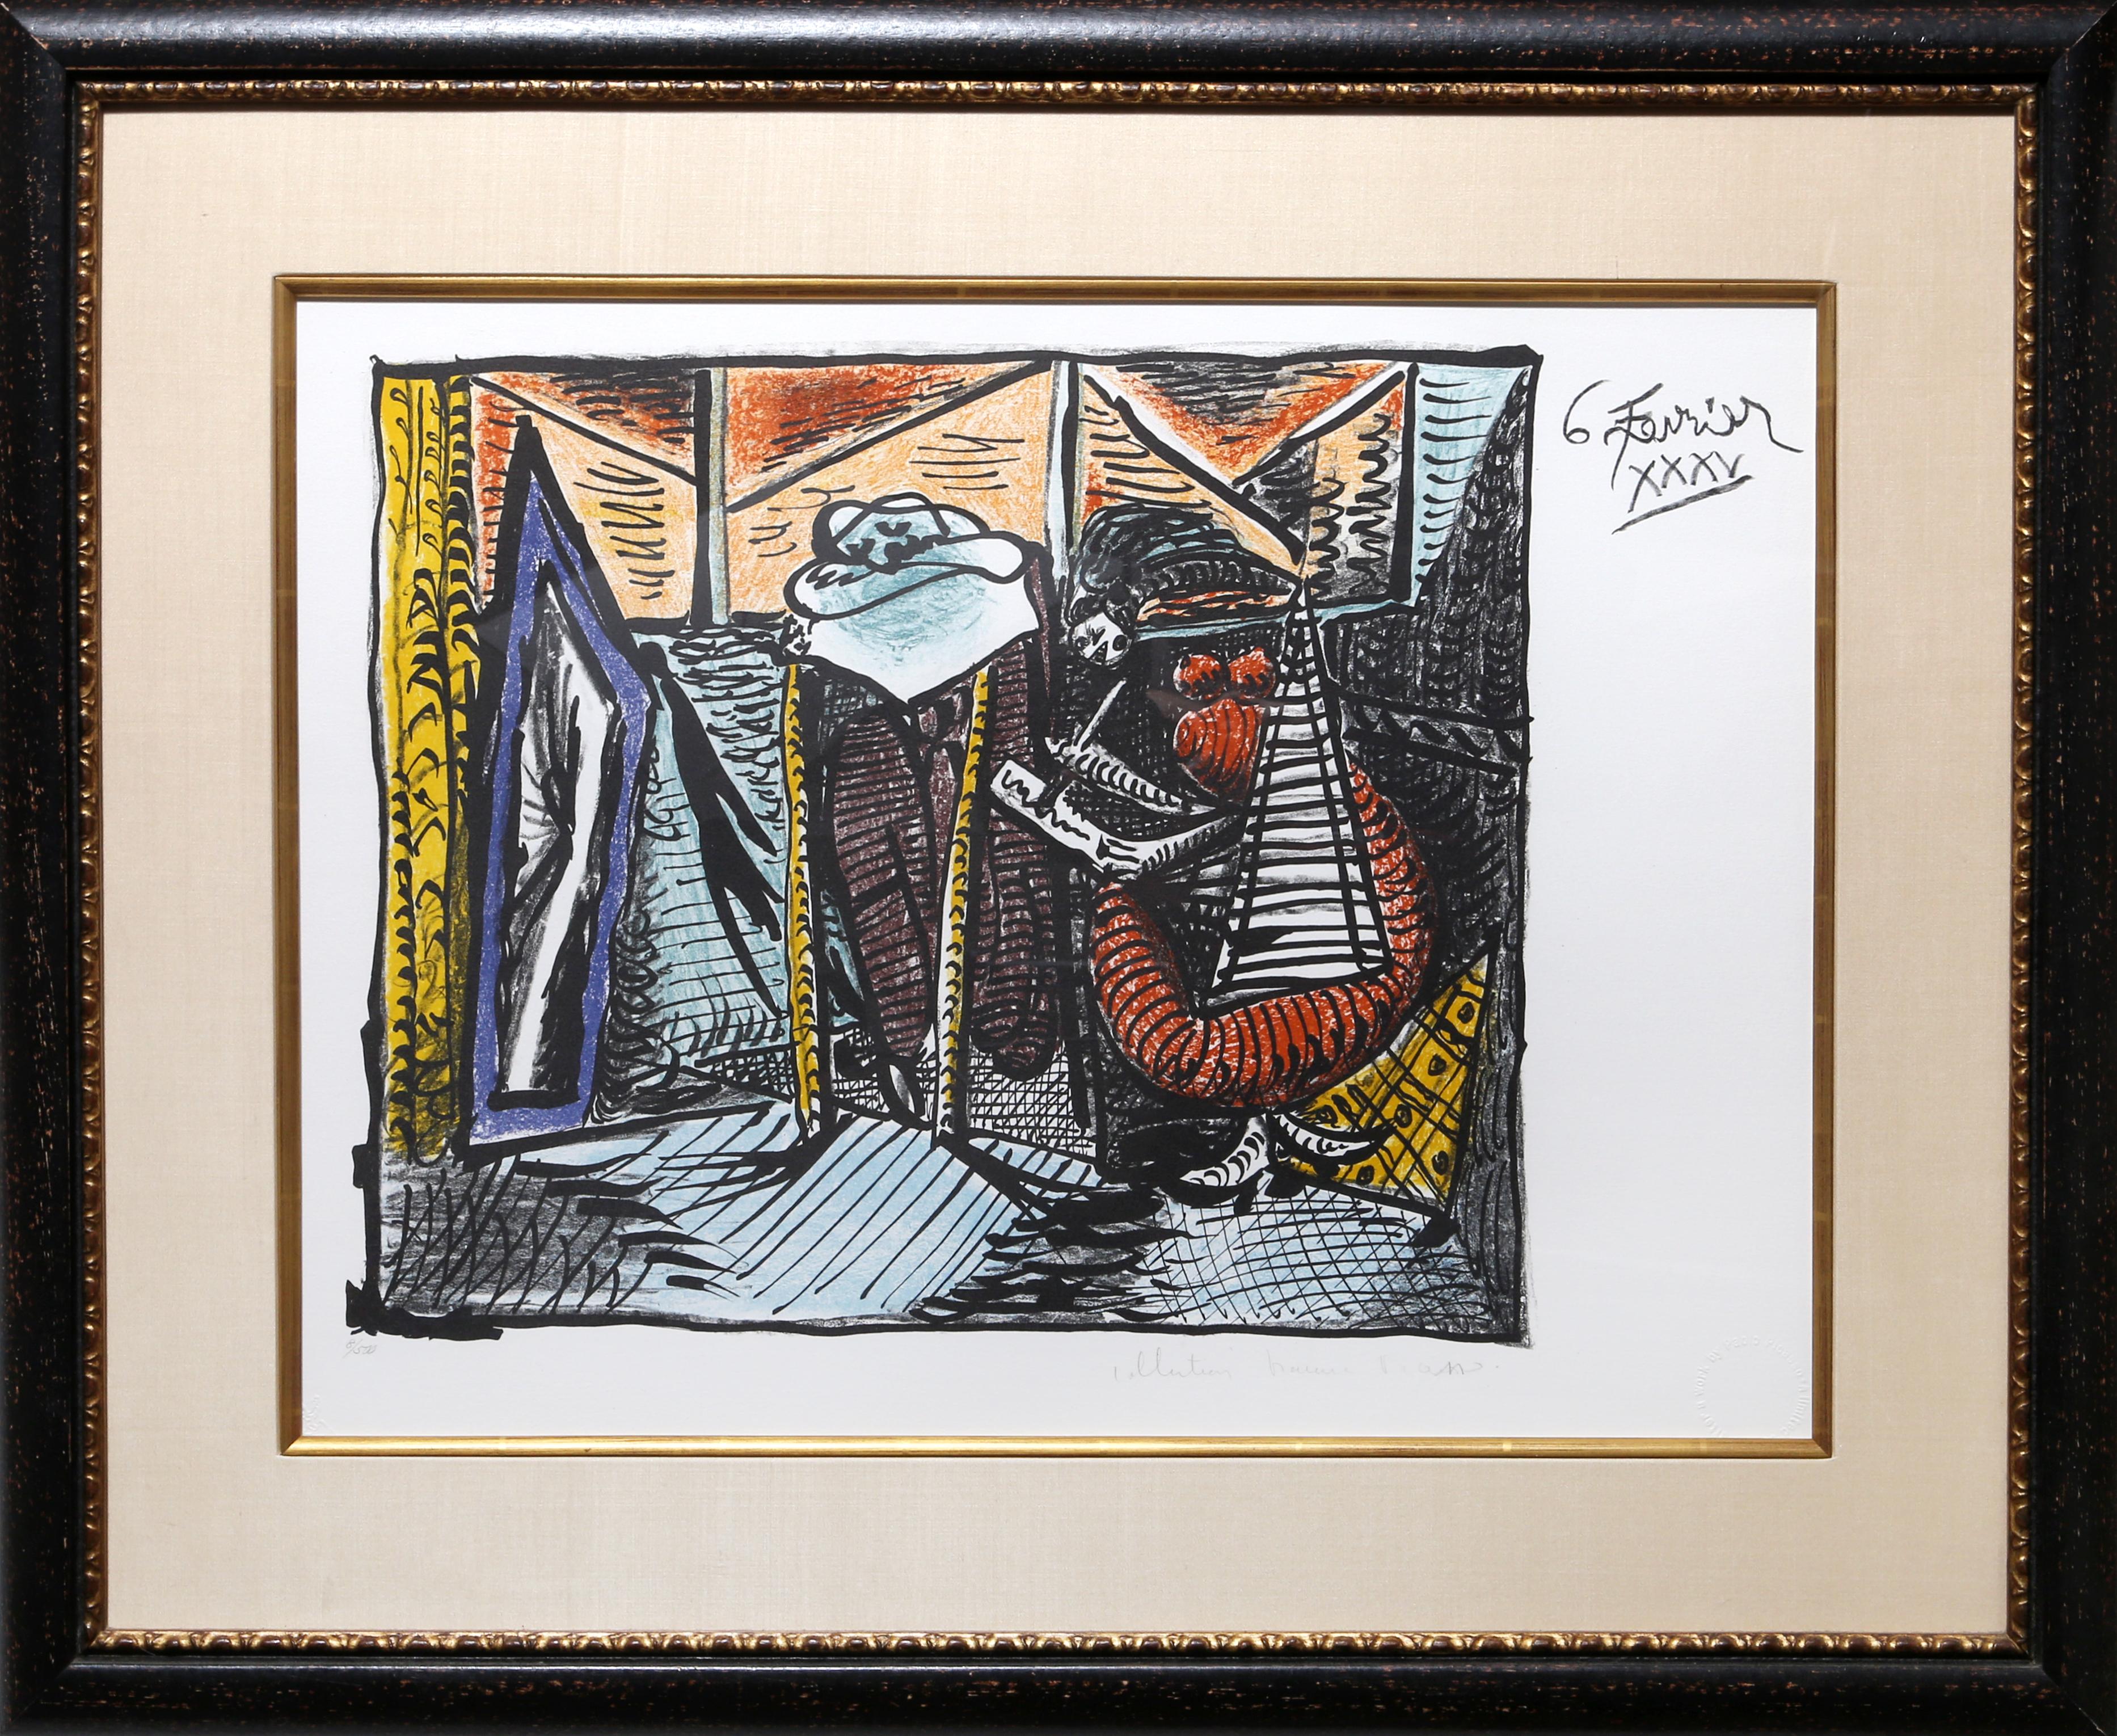 Lithographie de la Collection Salsa de Marina Picasso d'après le tableau de Pablo Picasso "Femme Dessinant, Femme Assoupi".  La peinture originale a été achevée en 1935. Dans les années 1970, après la mort de Picasso, Marina Picasso, sa